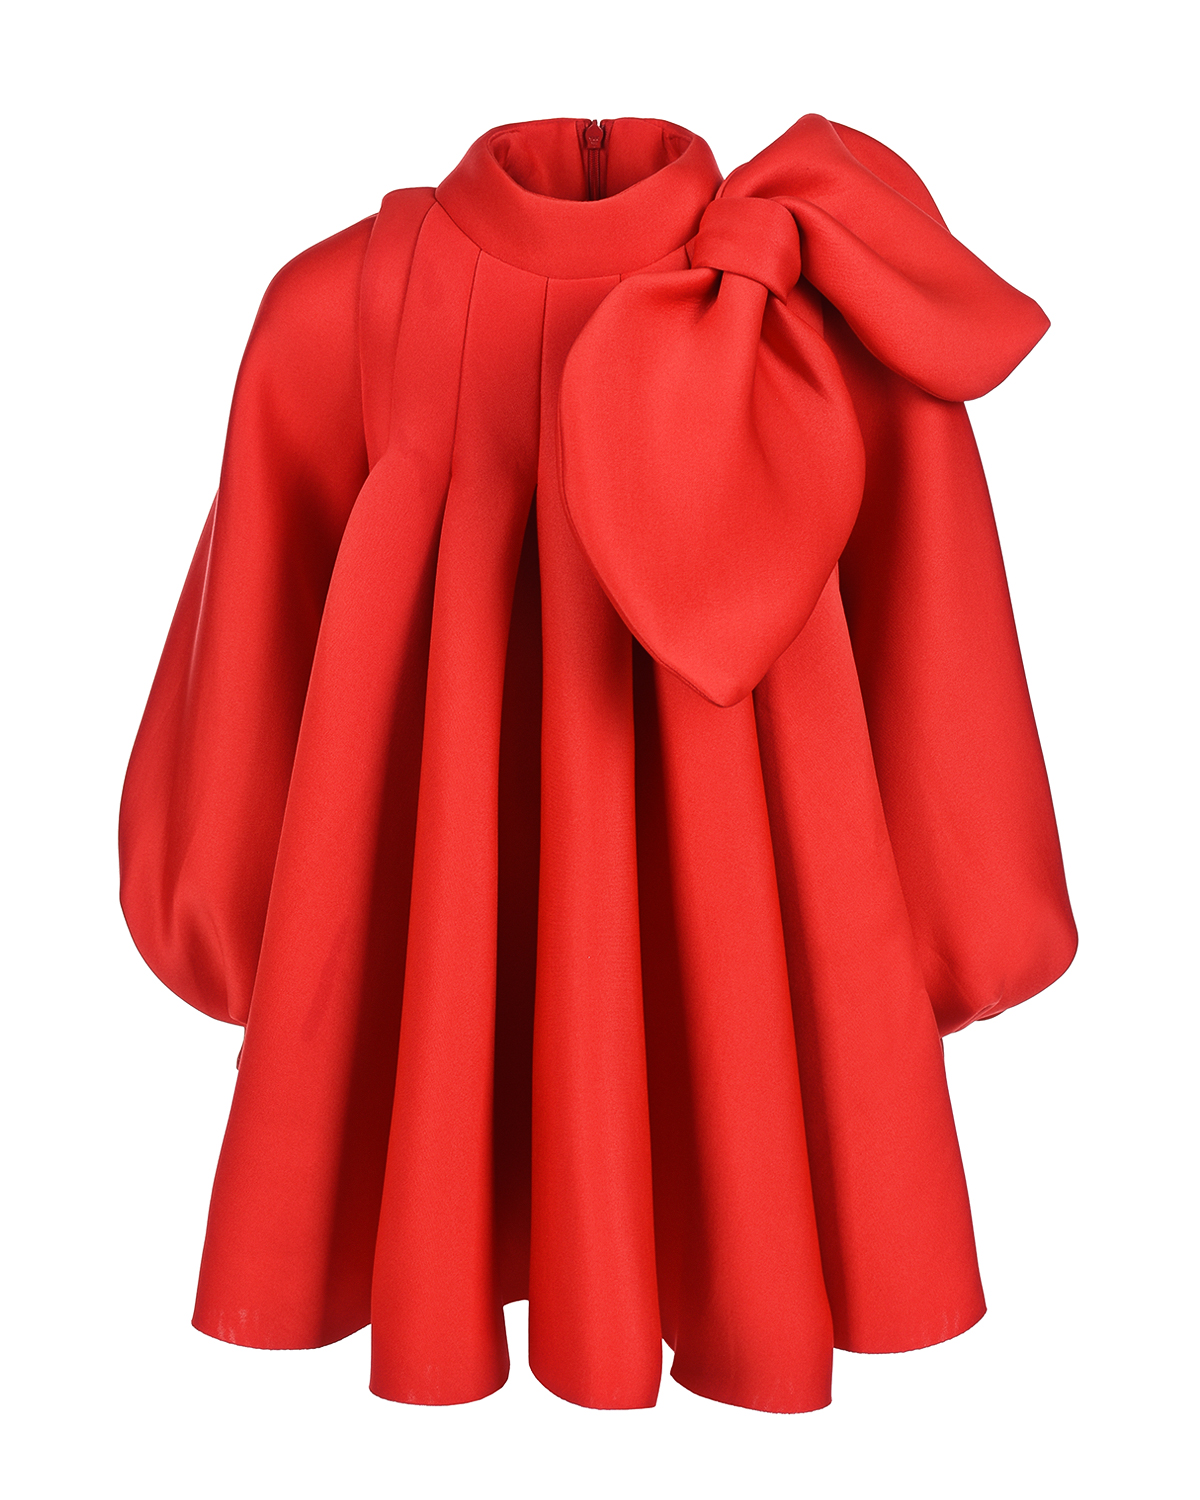 Купить Красное платье с крупным бантом Nikolia детское, Голубой, 100%полиэстер, 100%хлопок